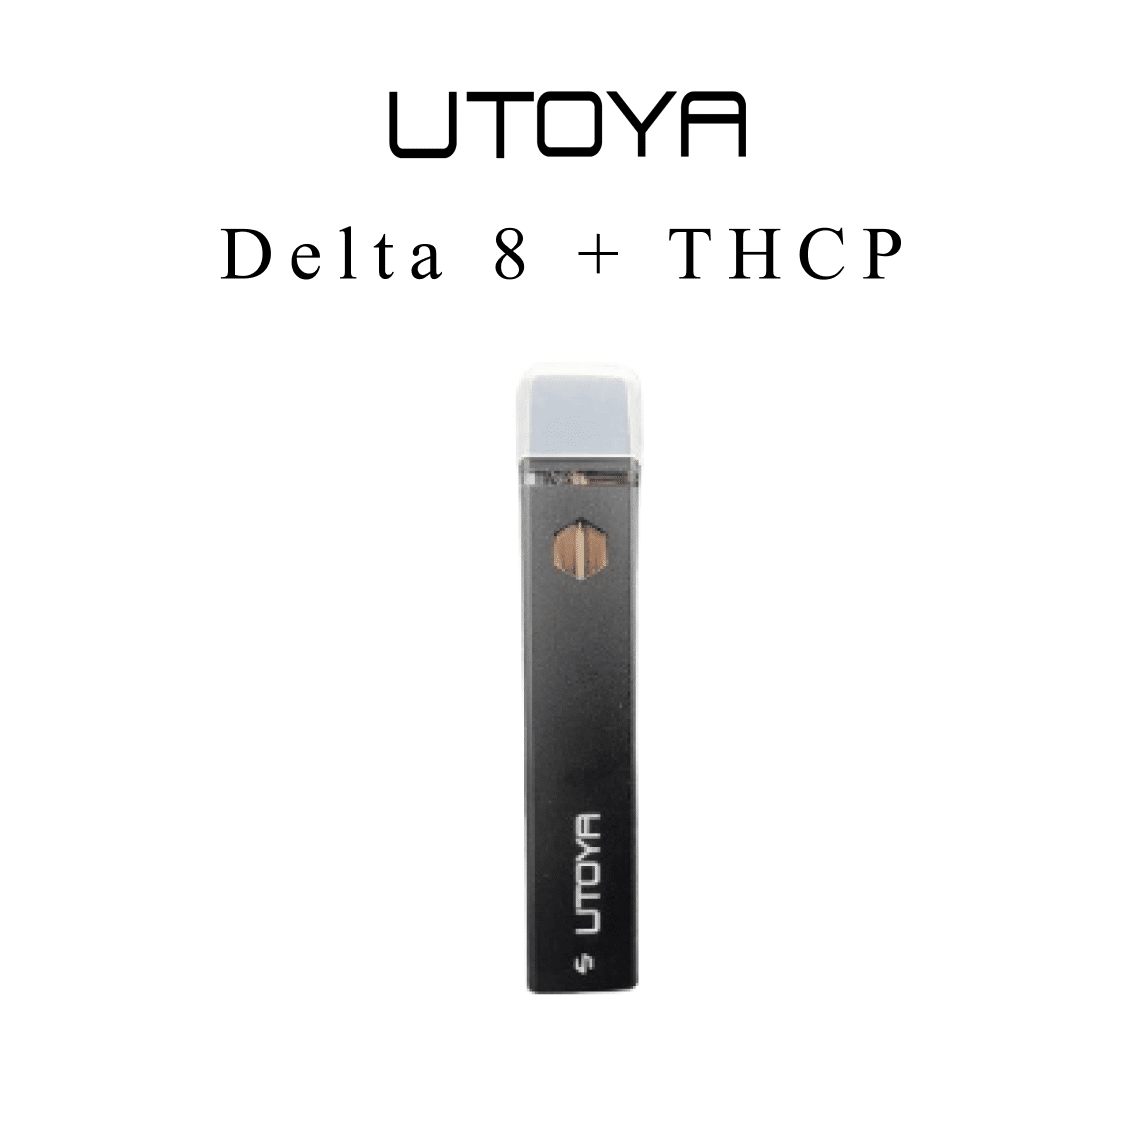 delta 8 + thcp vape pen